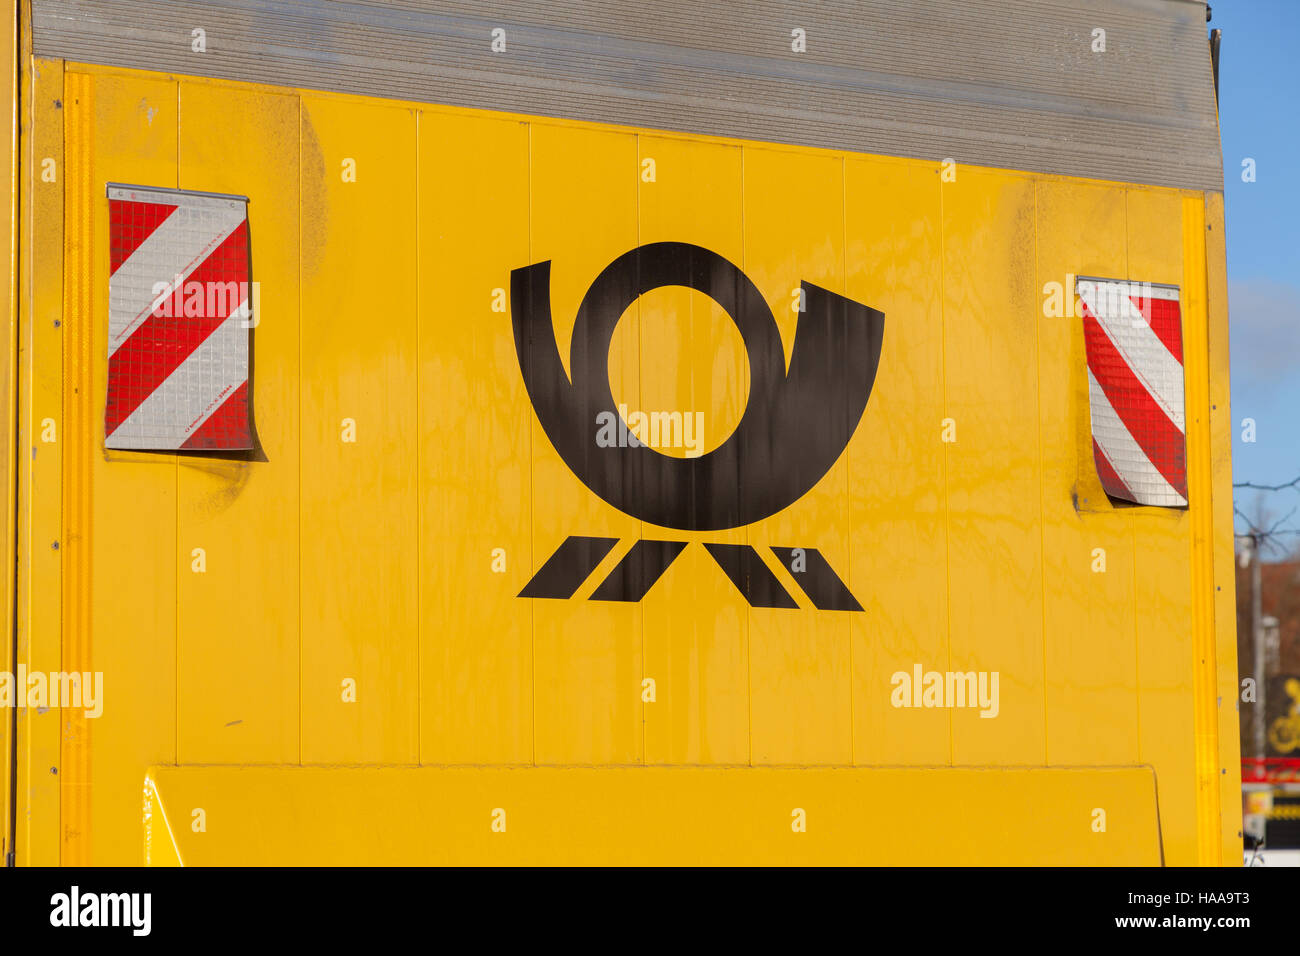 HANNOVER / Deutschland - 27. November 2016: Deutsche Post Service (Deutsche Post) Logo auf einem gelben Container Stockfoto